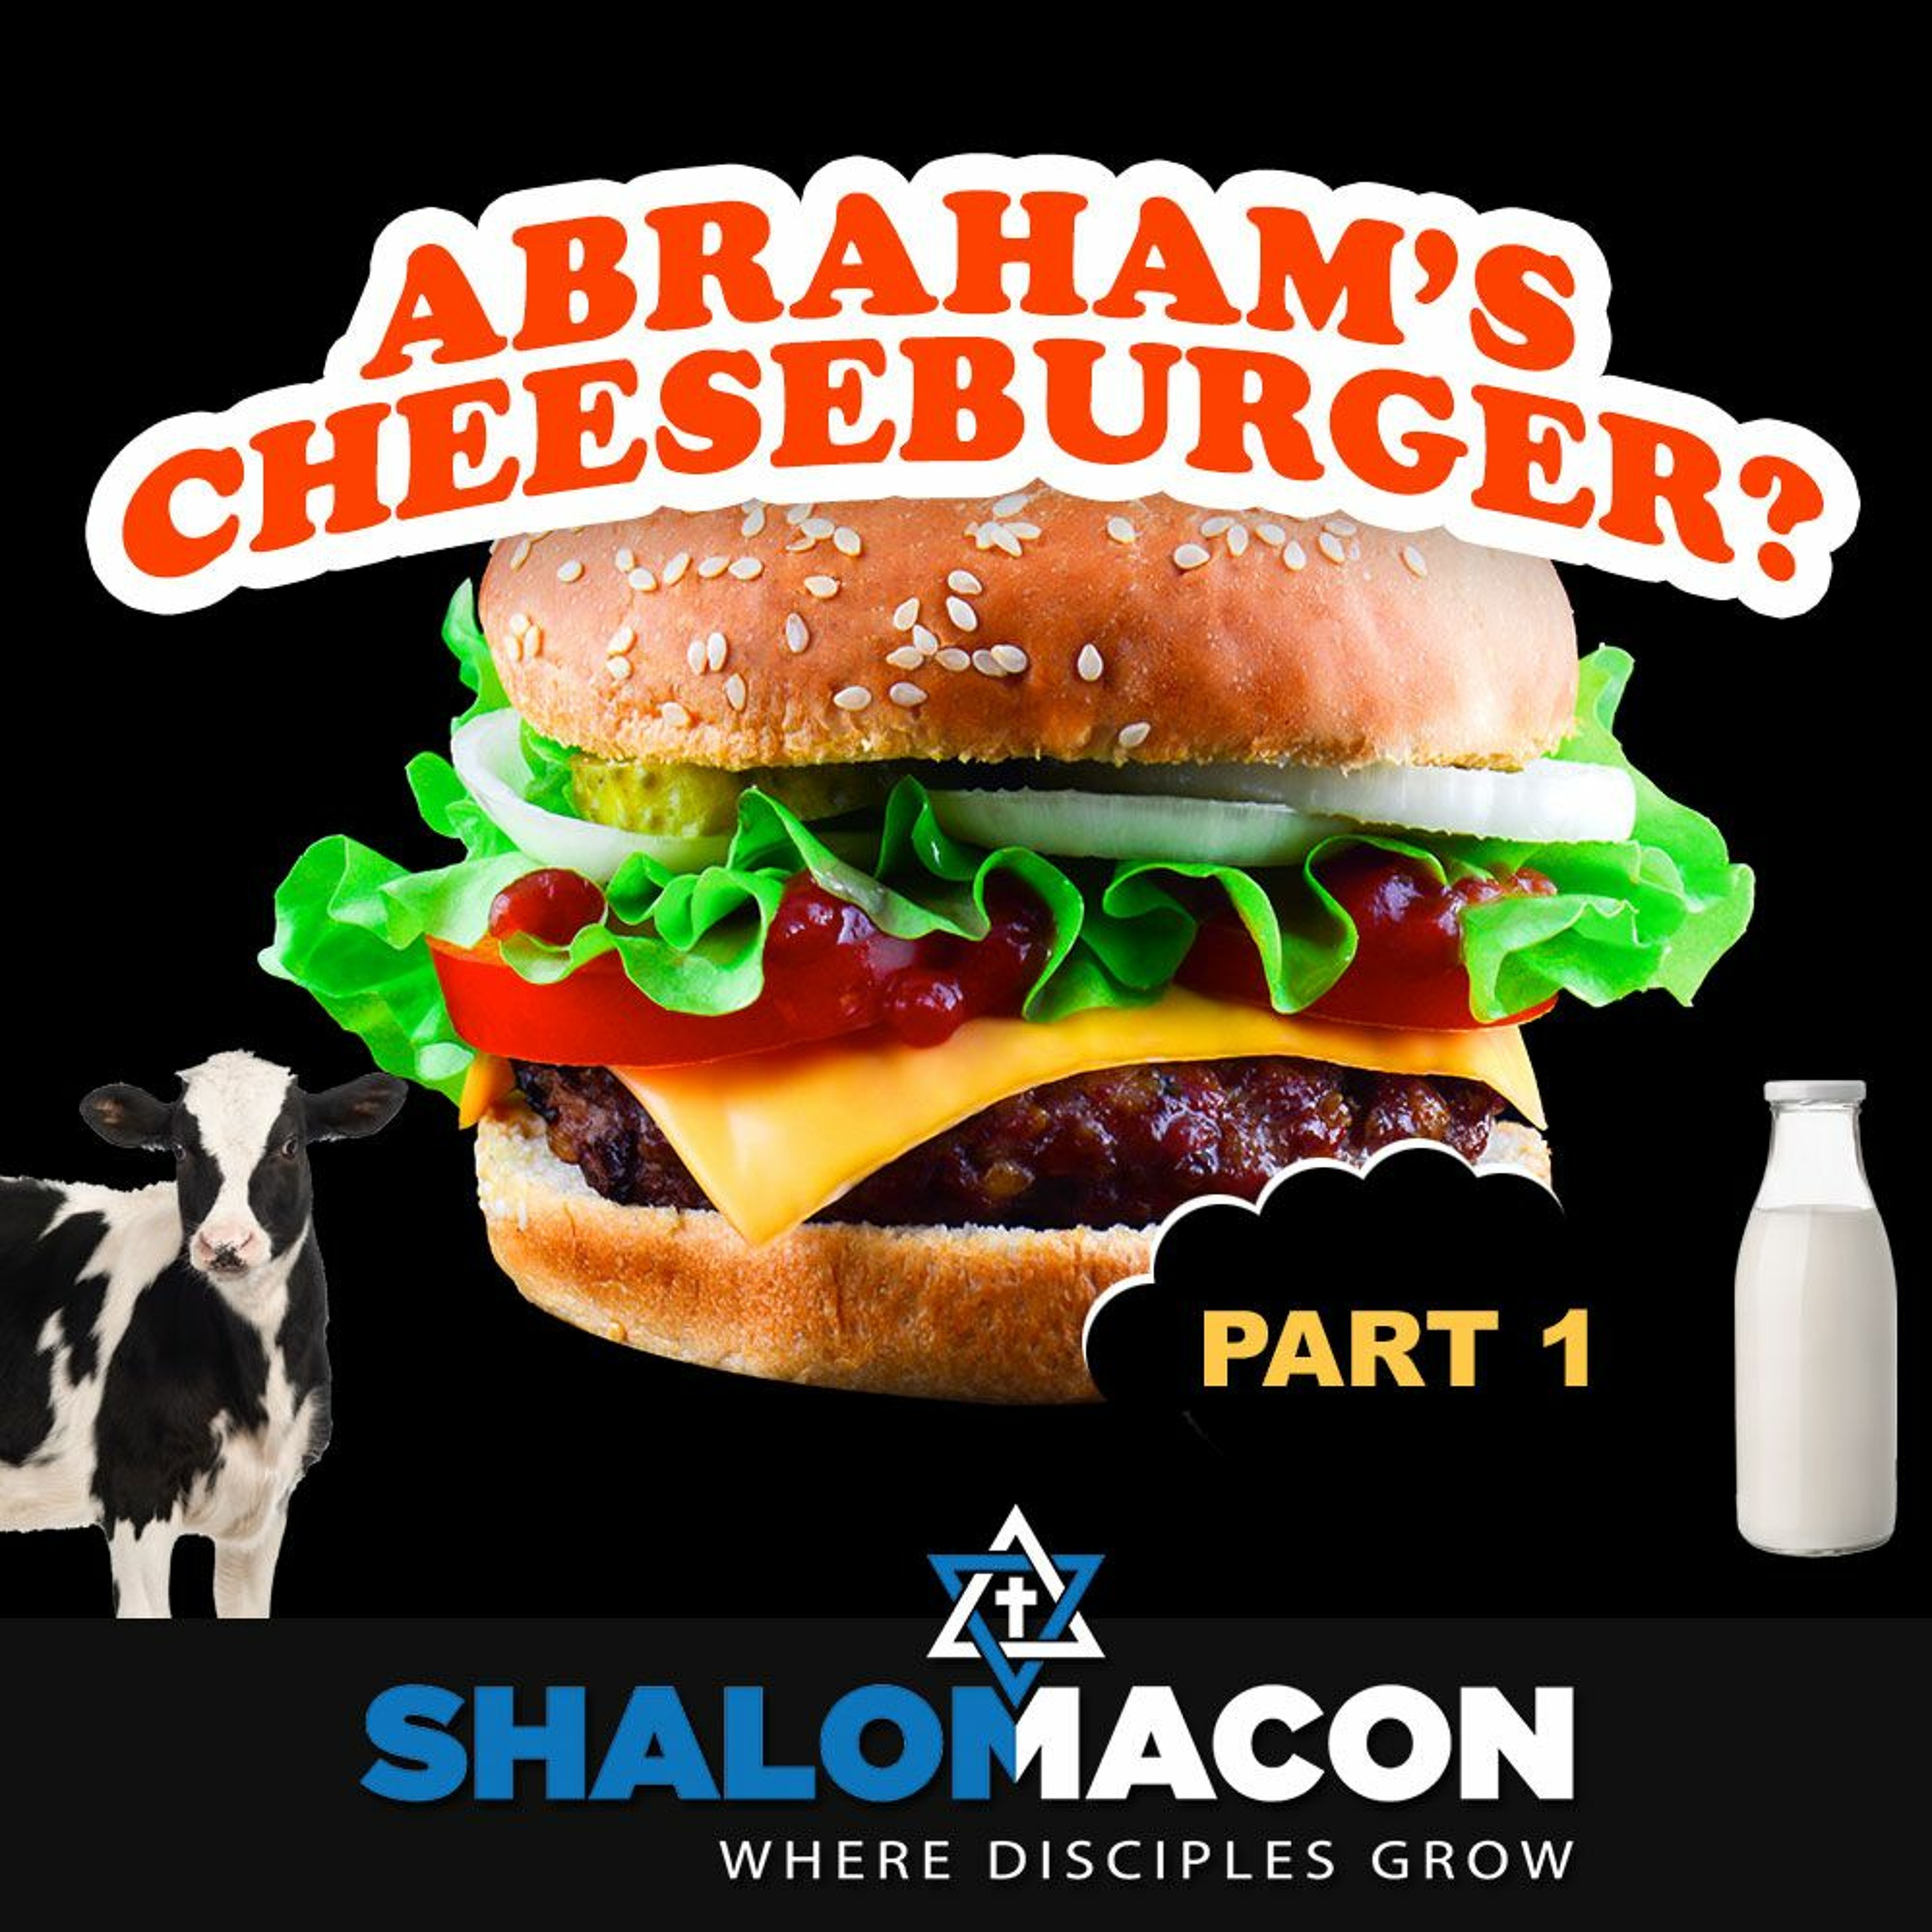 Abraham's Cheeseburger? - Part 1